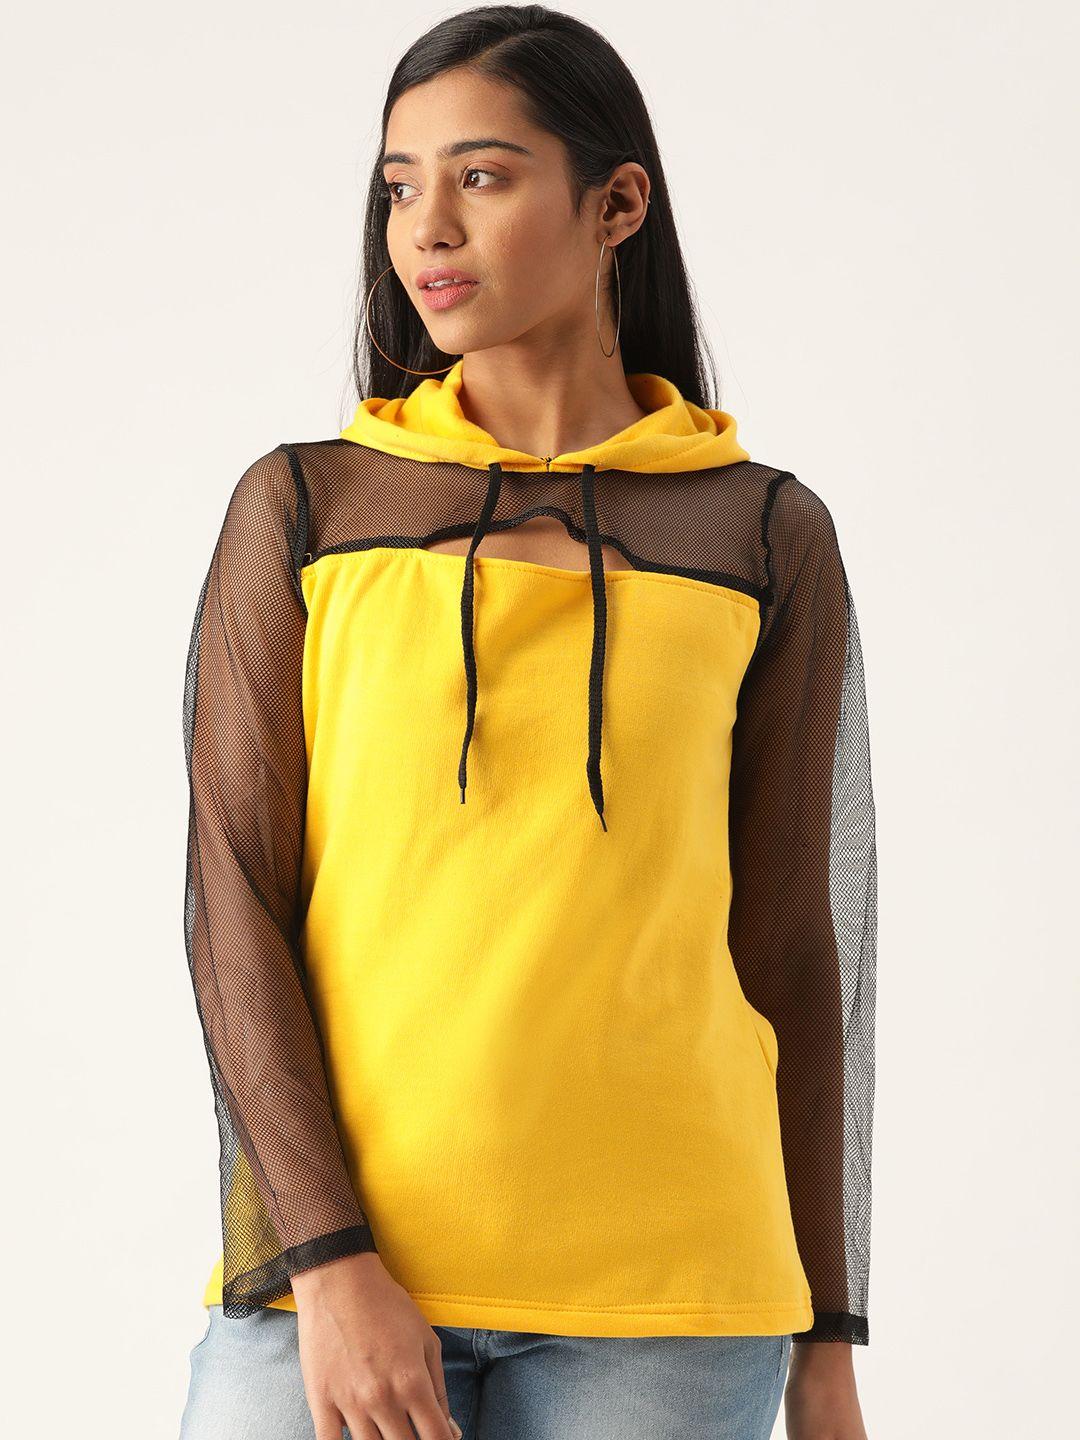 belle-fille-women-yellow-&-black-solid-semi-sheer-hooded-sweatshirt